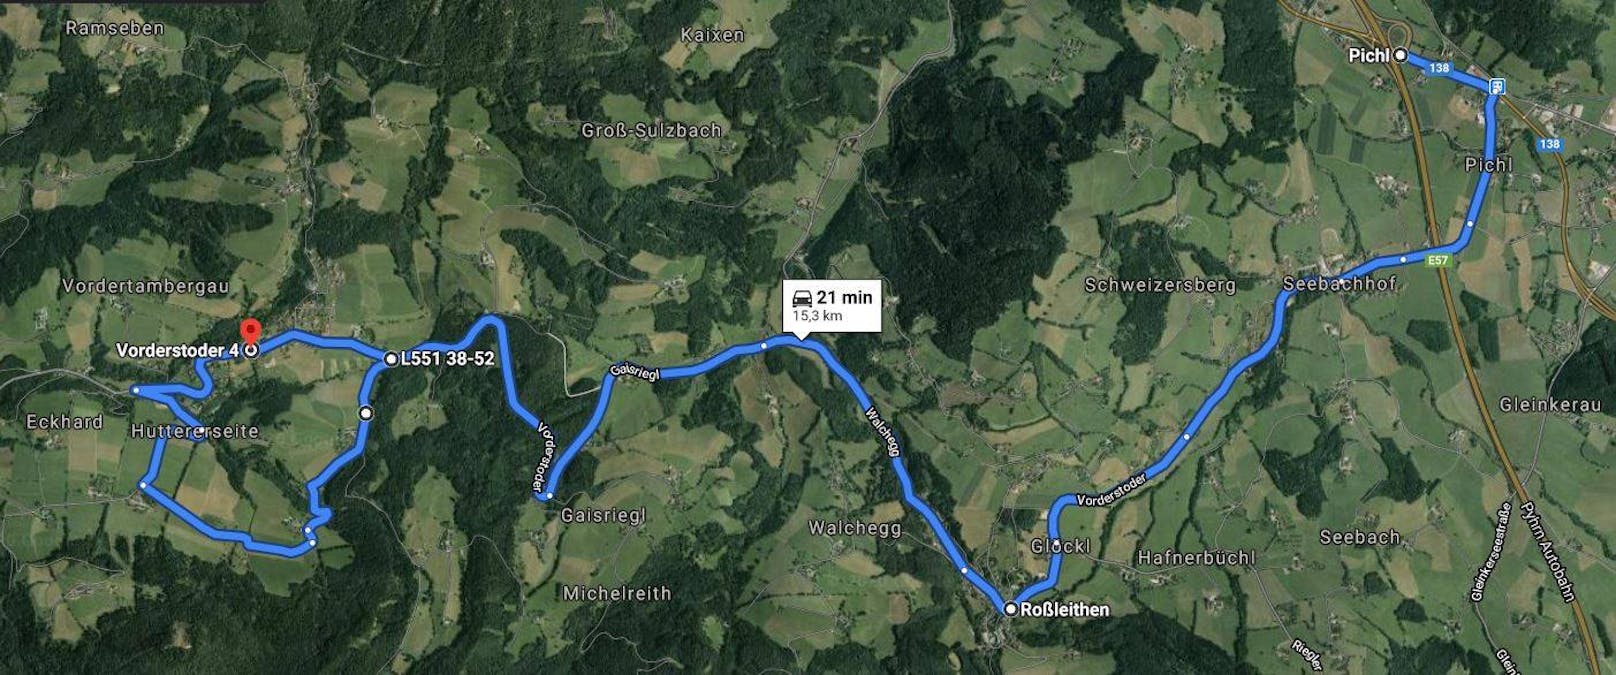 Auf dieser Route sollen am 25. Oktober 900 Autos zeigen, was bei einer Anbindung von Vorderstoder ans Skigebiet Hinterstoder passieren würde.